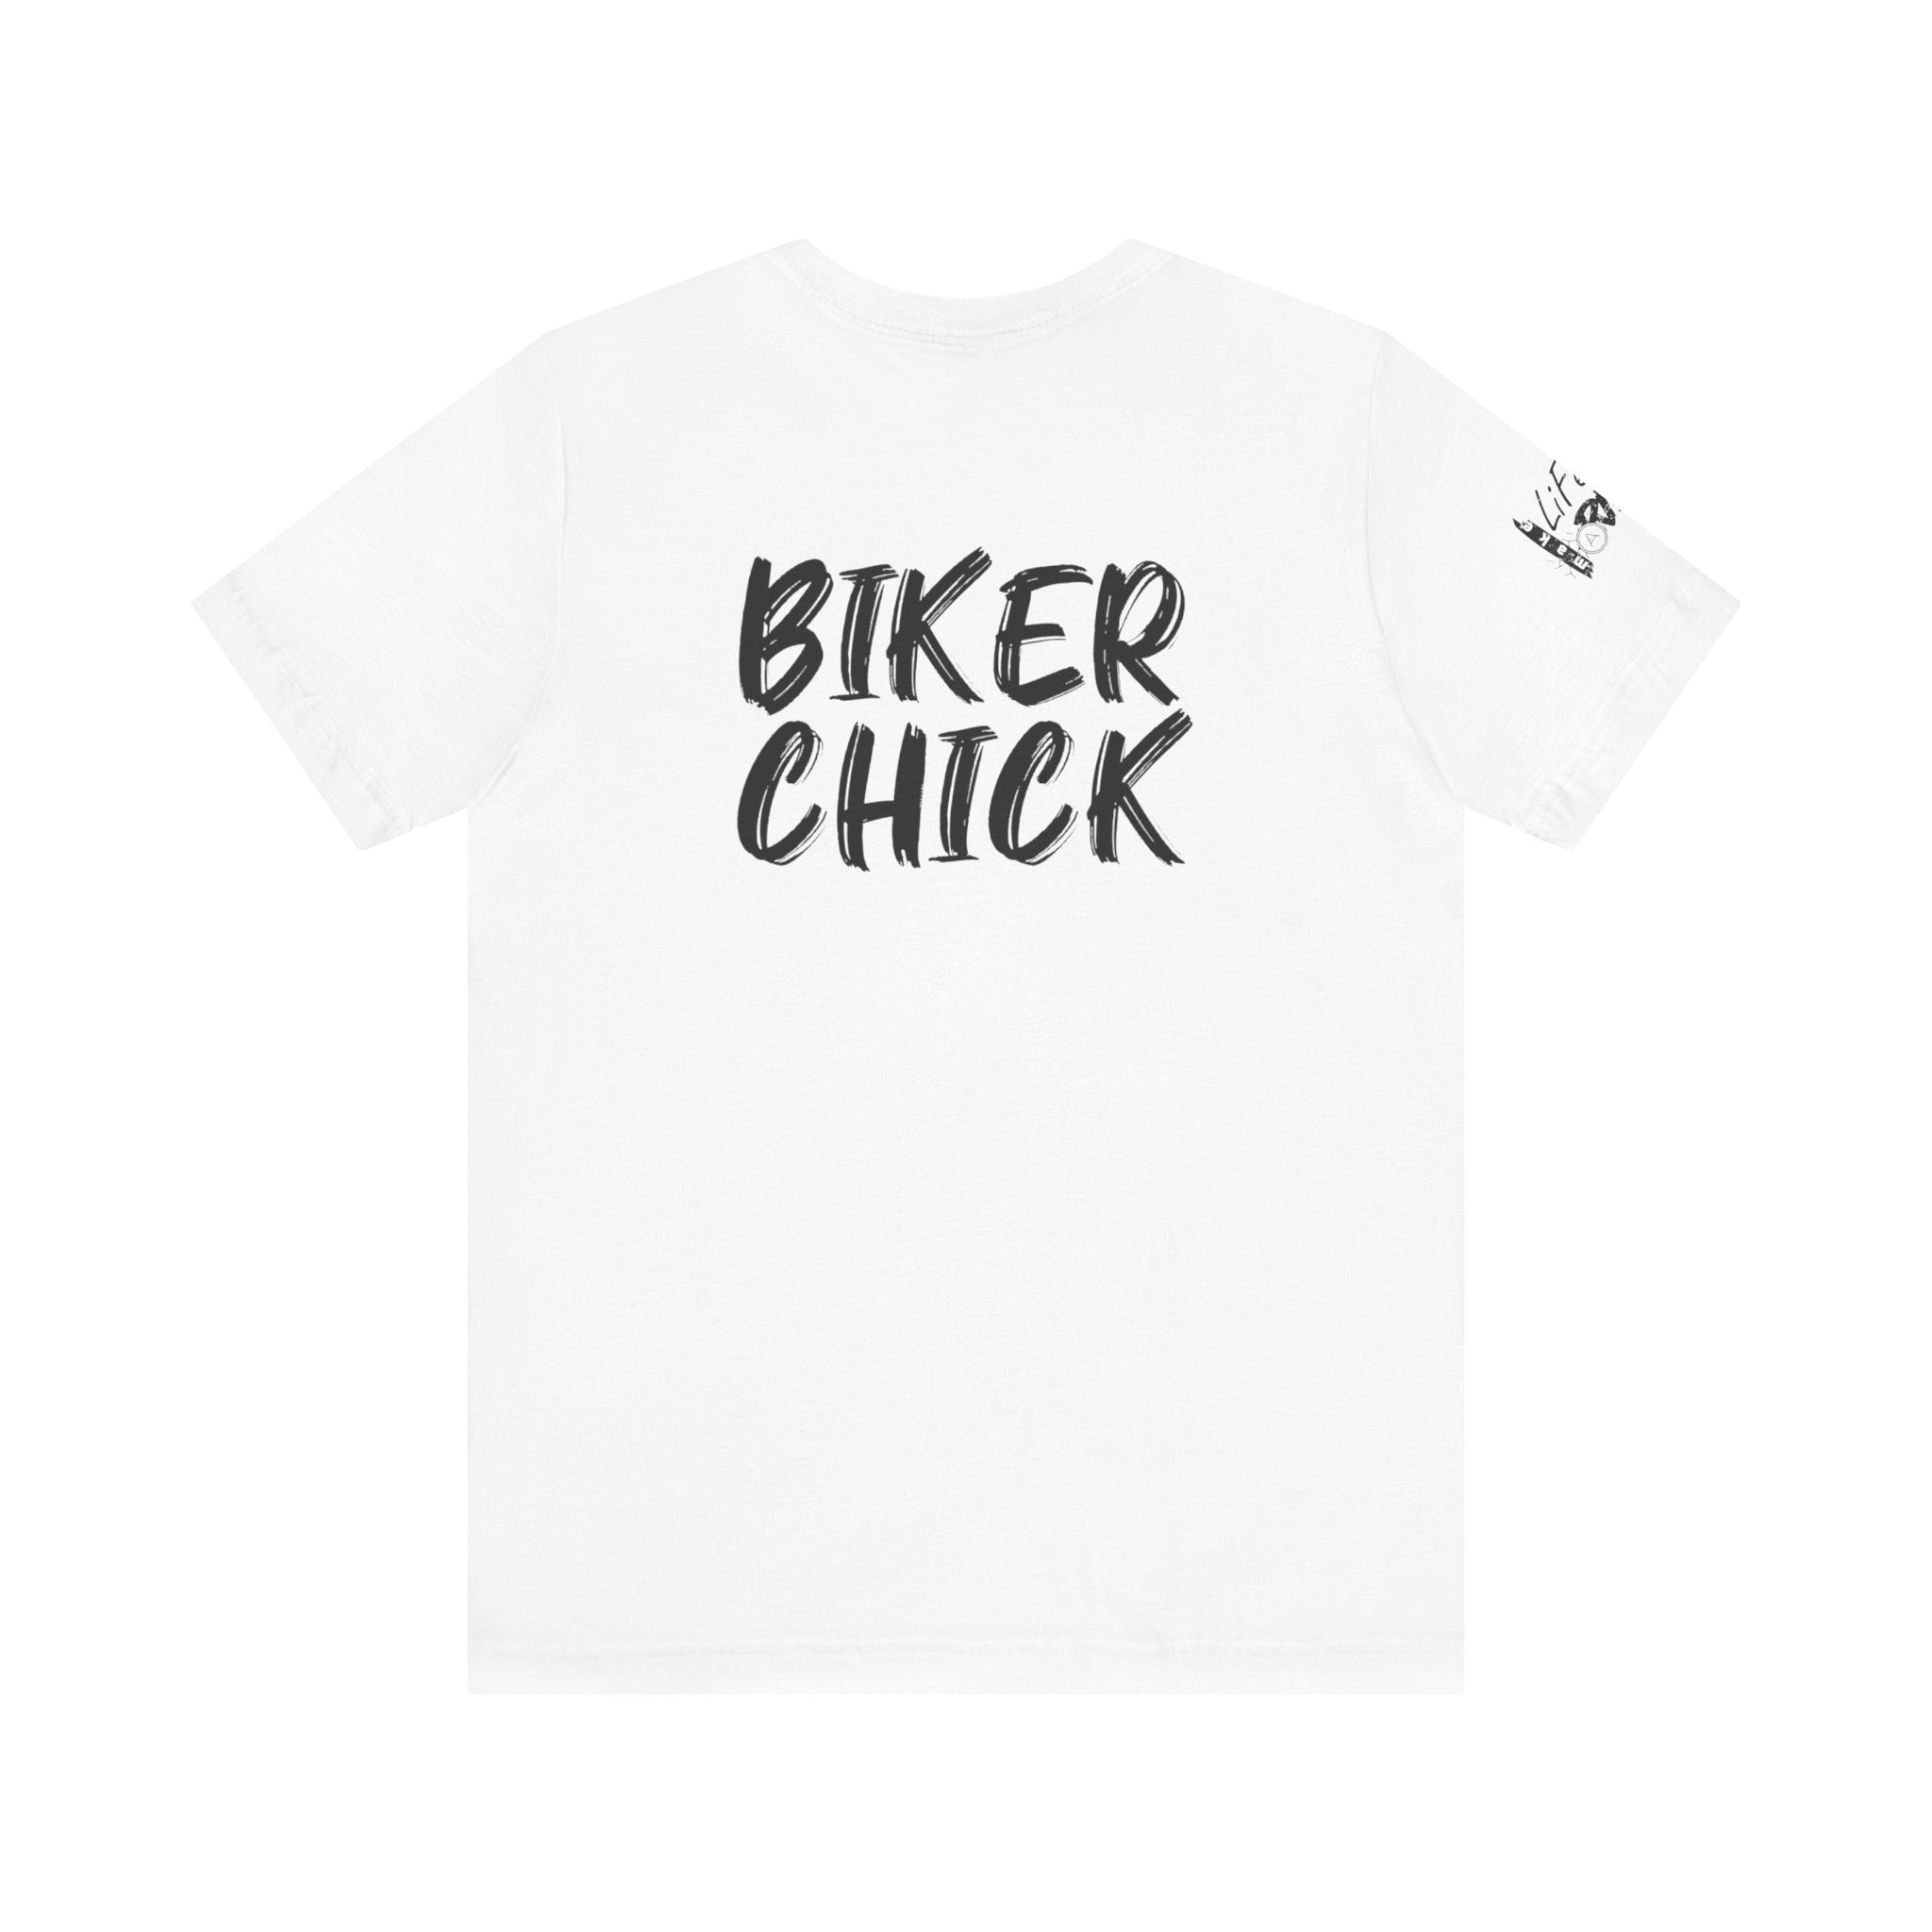 Motorrad-Art, T-Shirt mit Motorrad und Motorradfahrer auf Shirt Vorderseite, weiß, schwarz, blau, Bikerslogan und Bikermotive auf der Shirtrückseite, lustiger Motorradspruch